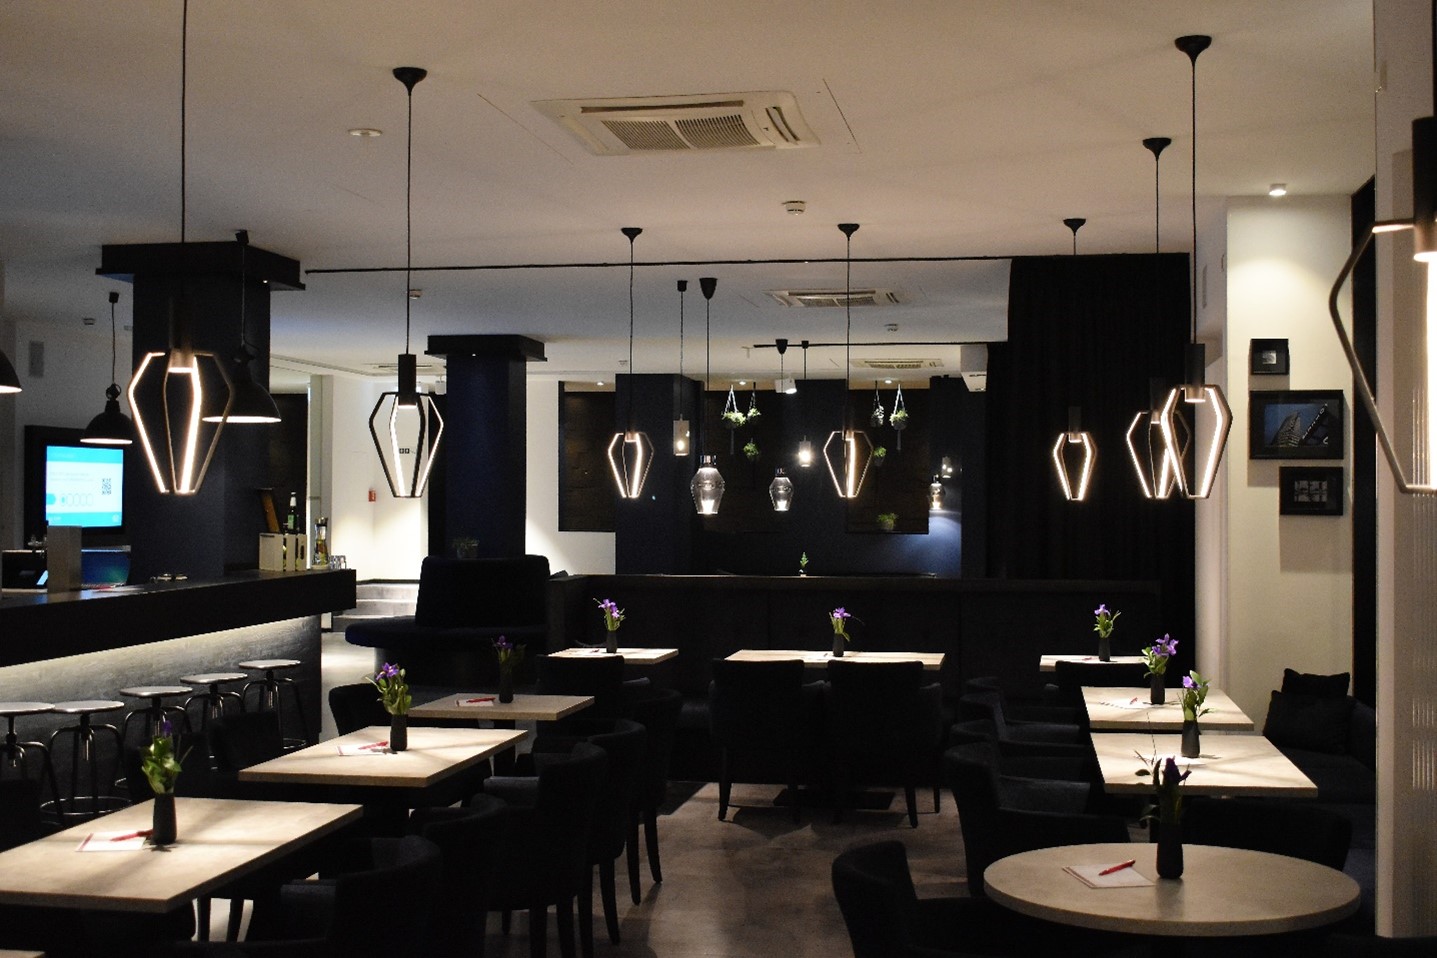 Modern restaurant lighting including pendant lights